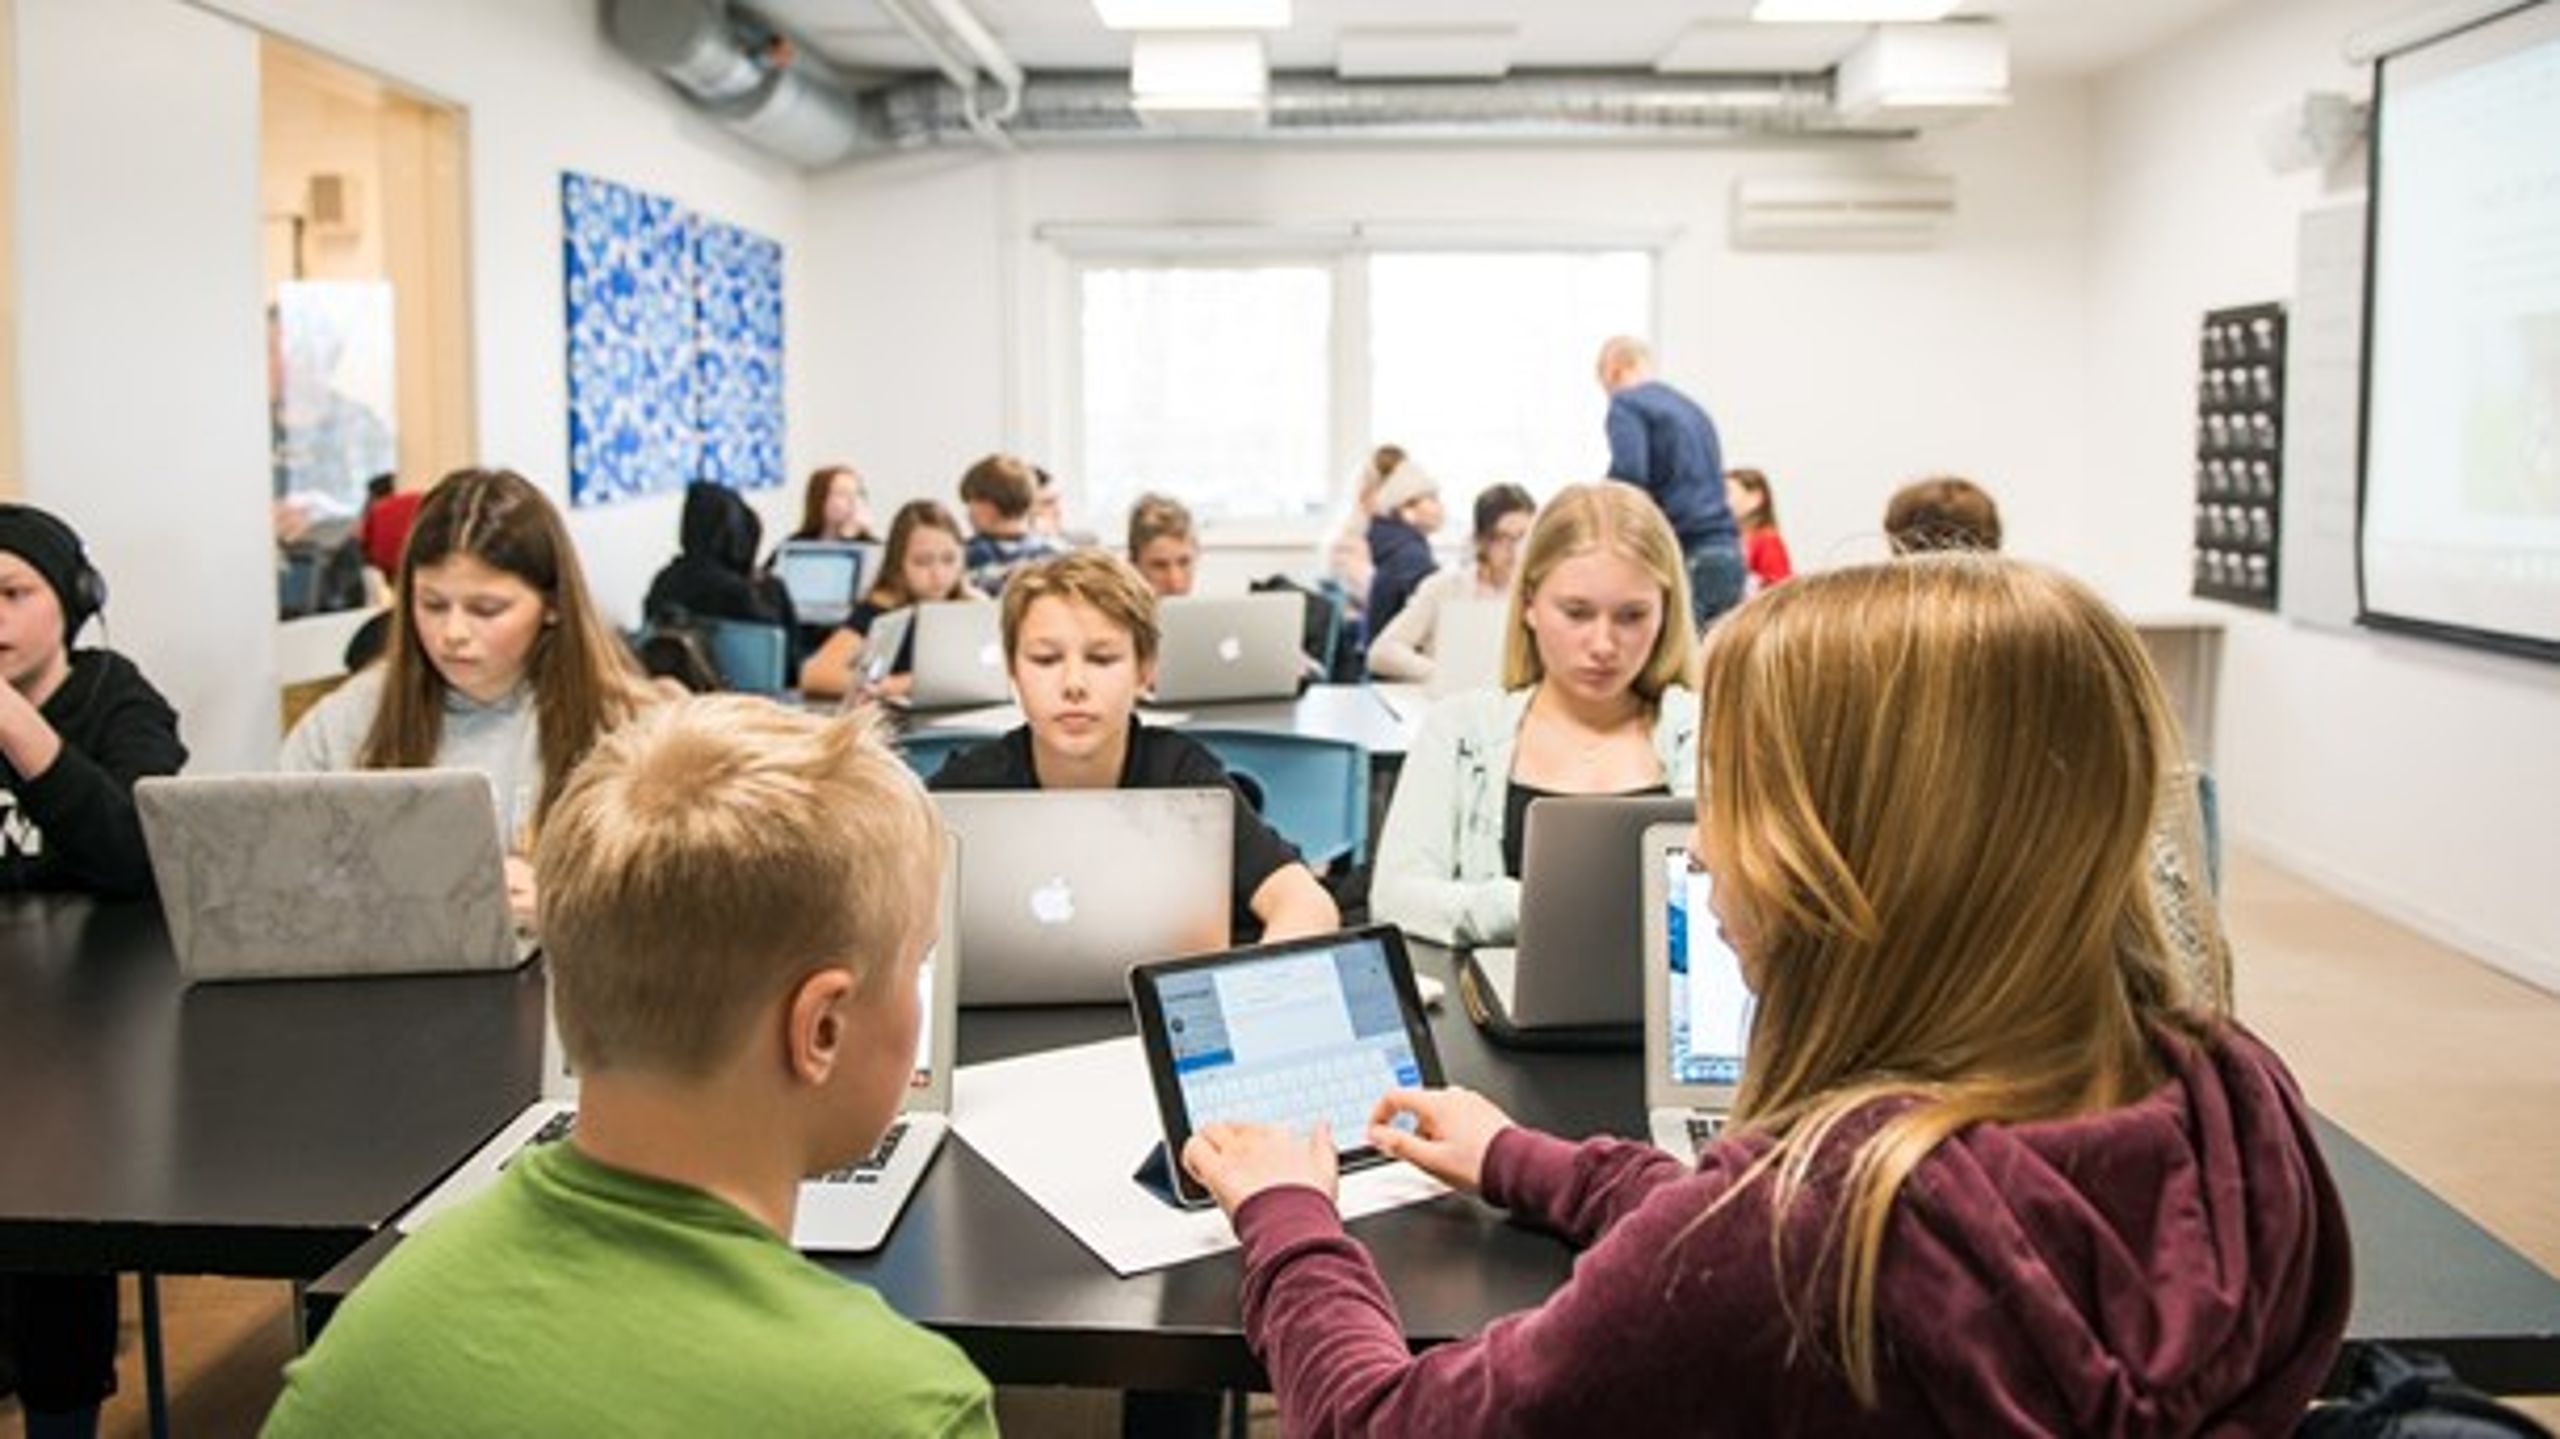 Digitala plattformar möjliggör standardiserade, löpande avstämningar med mindre insatser för lärare och chefer, skriver Henrik Appert och Arvid Gilljam.